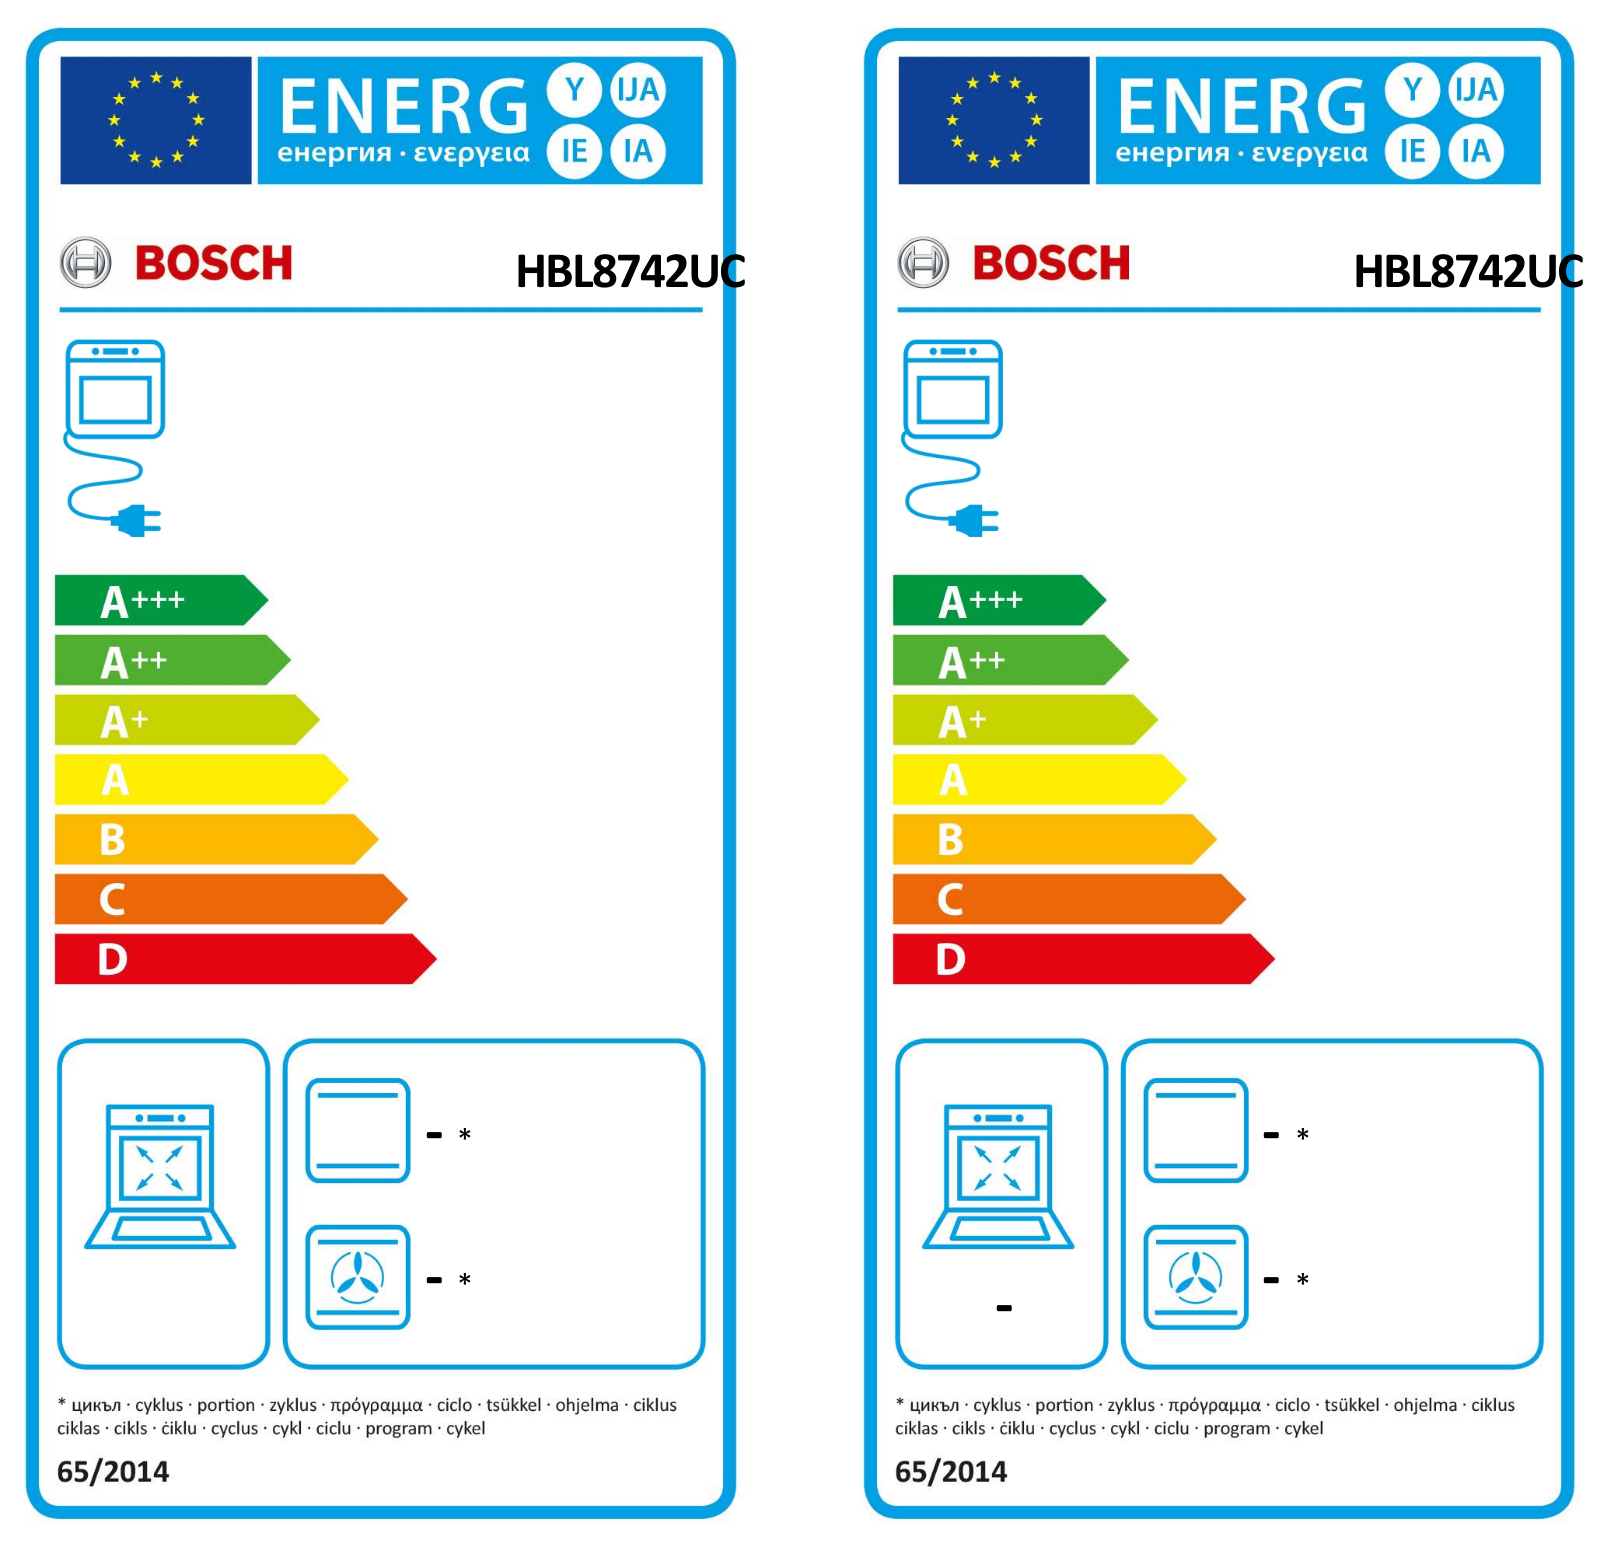 Bosch HBL8742UC Energy Guide